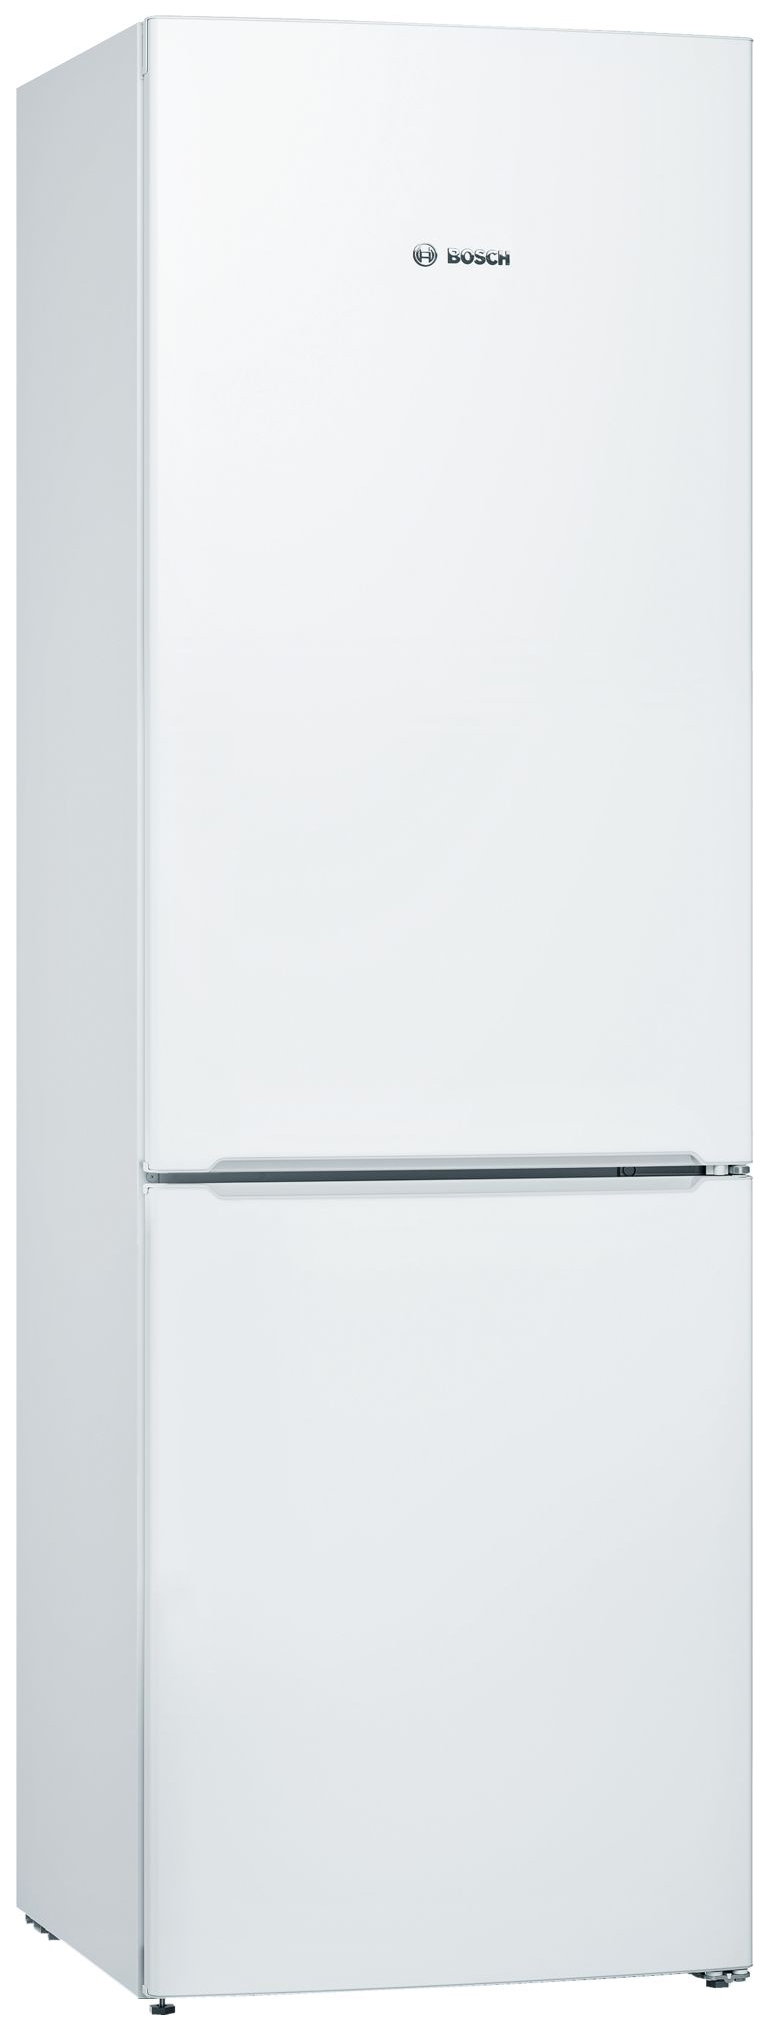 Холодильник Bosch KGV36NW1AR белый двухкамерный холодильник bosch kgn56ci30u